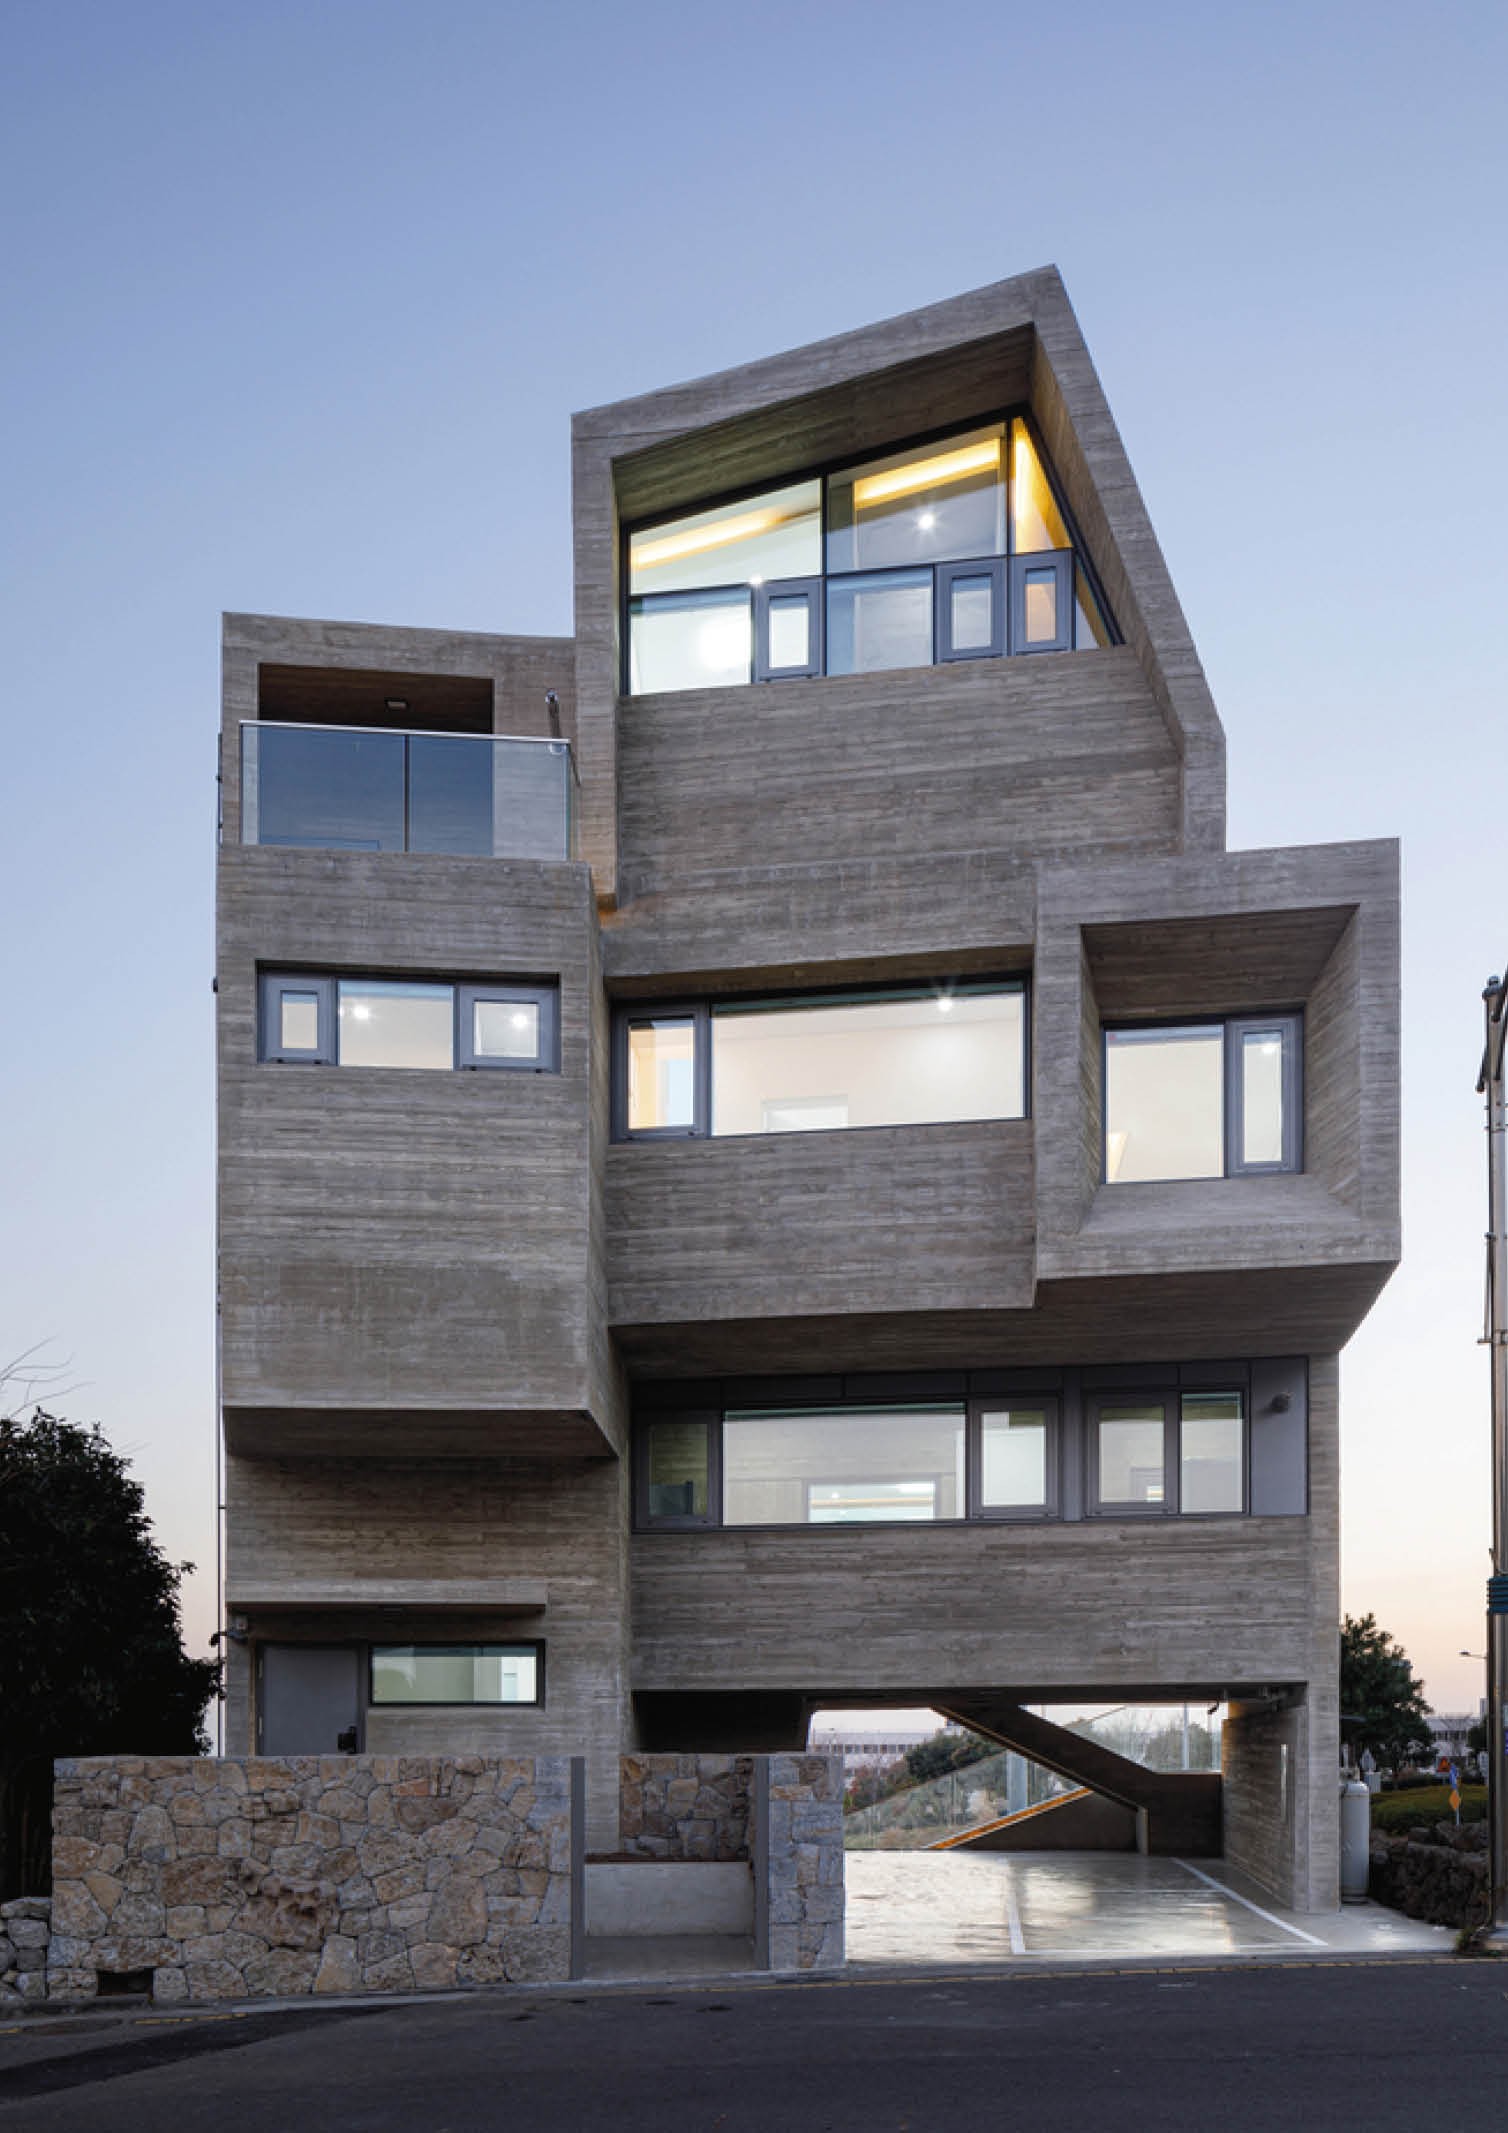 Jeju Residence designed by Moon Hoon